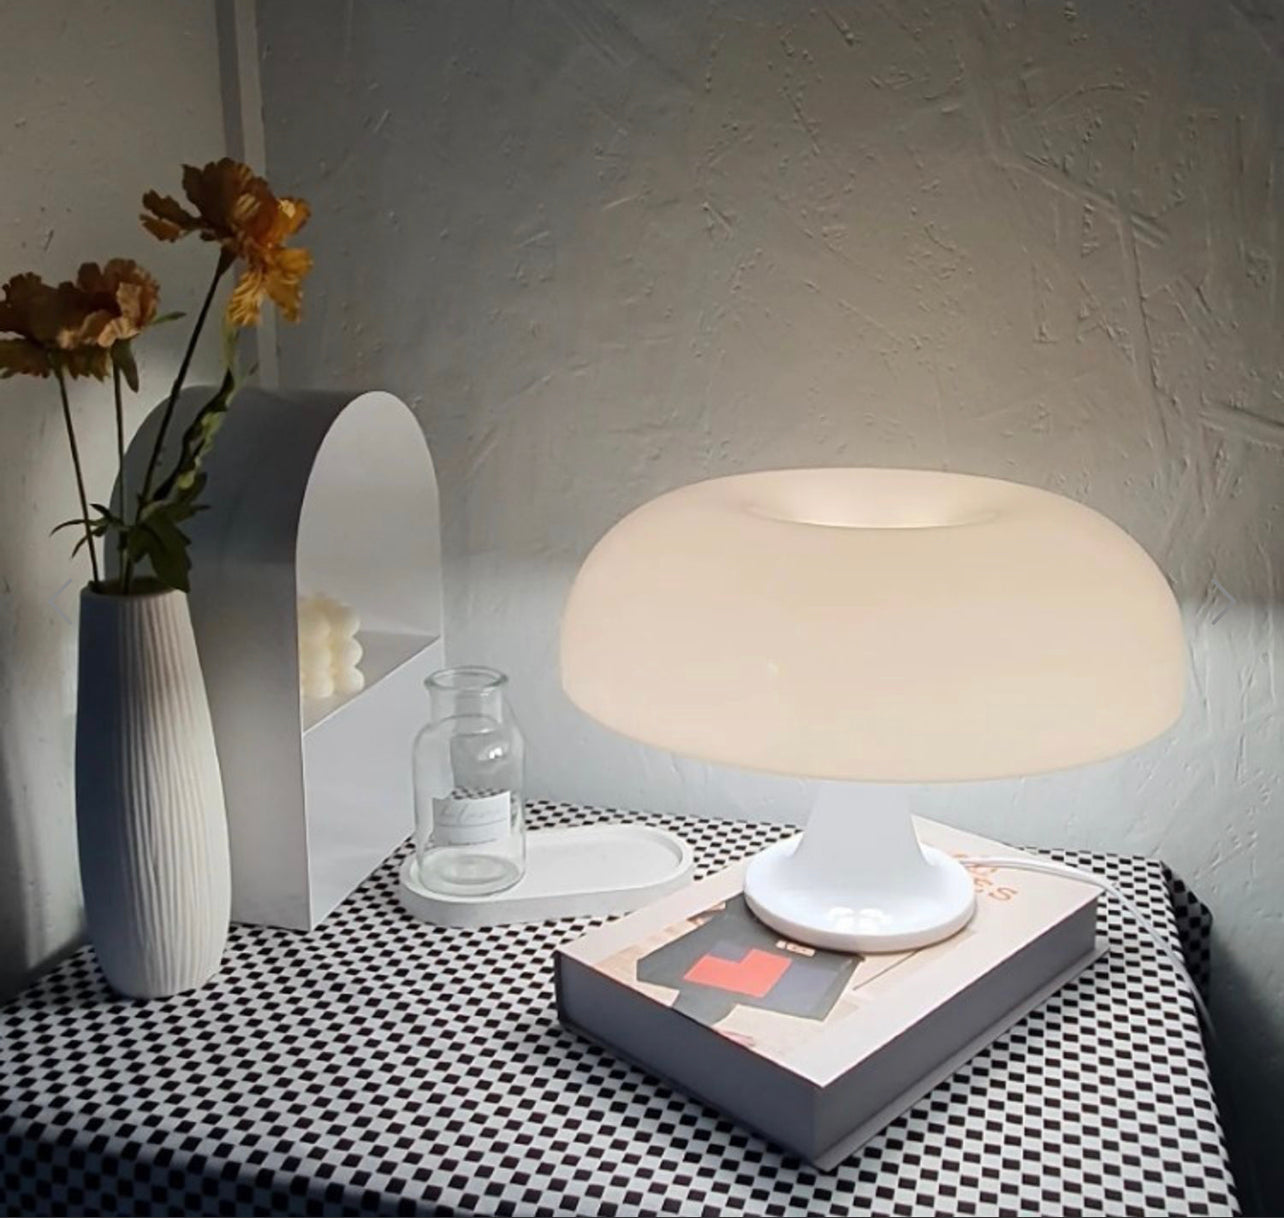 灯のついた白いマッシュルーム型のランプ